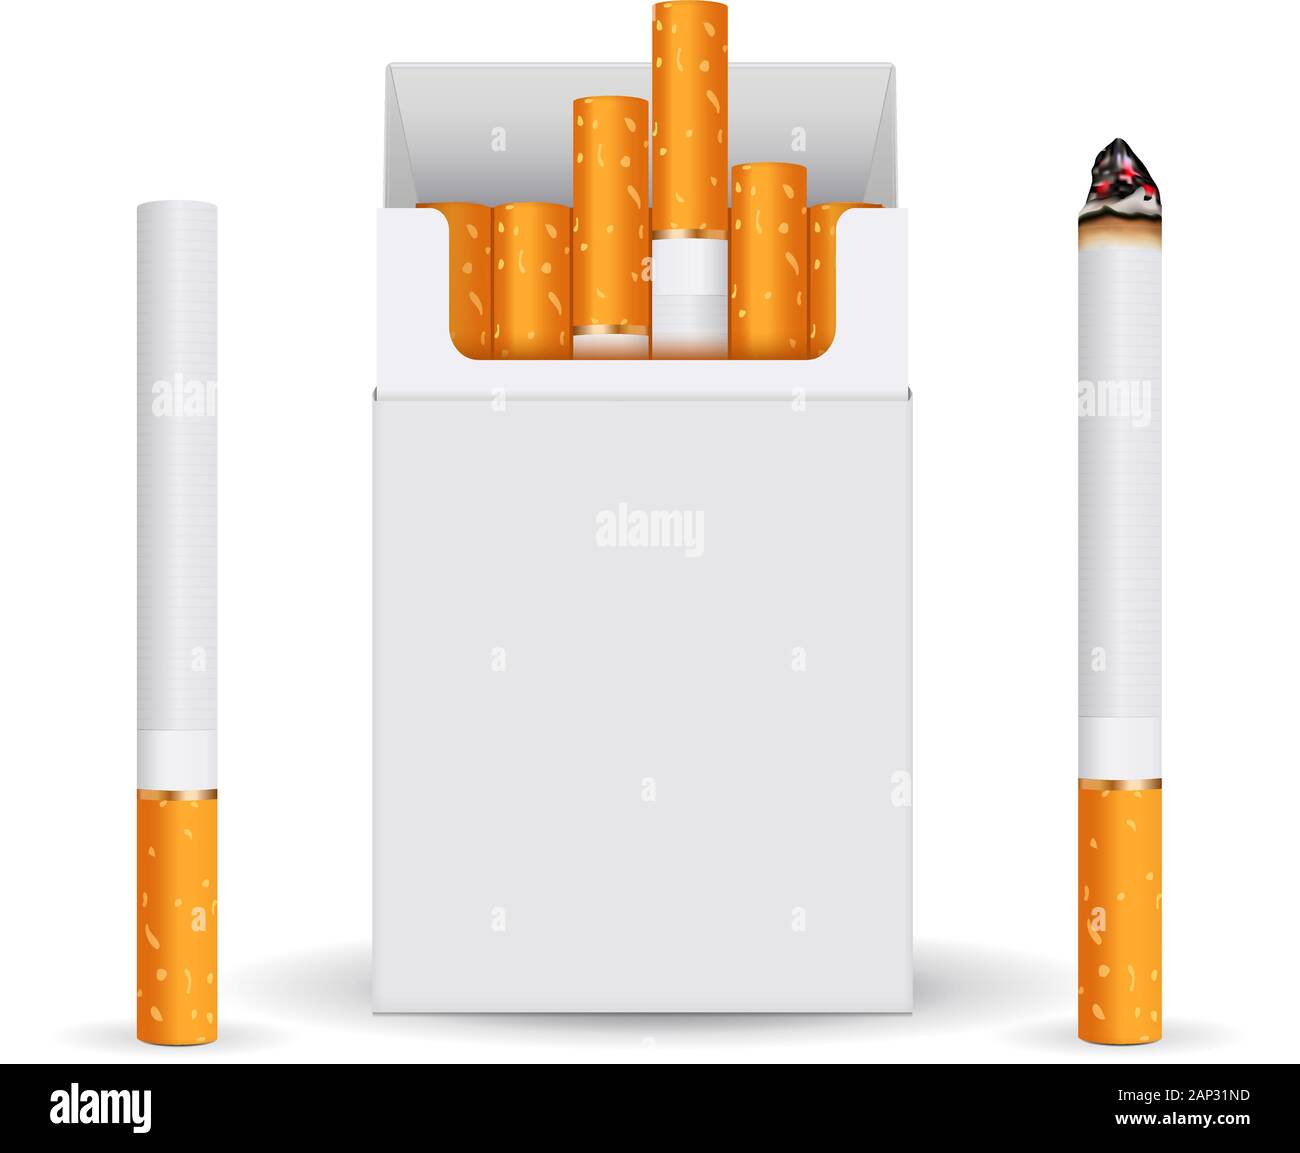 Blanc Blanc Paquet de cigarettes. Fumeurs Illustration de Vecteur